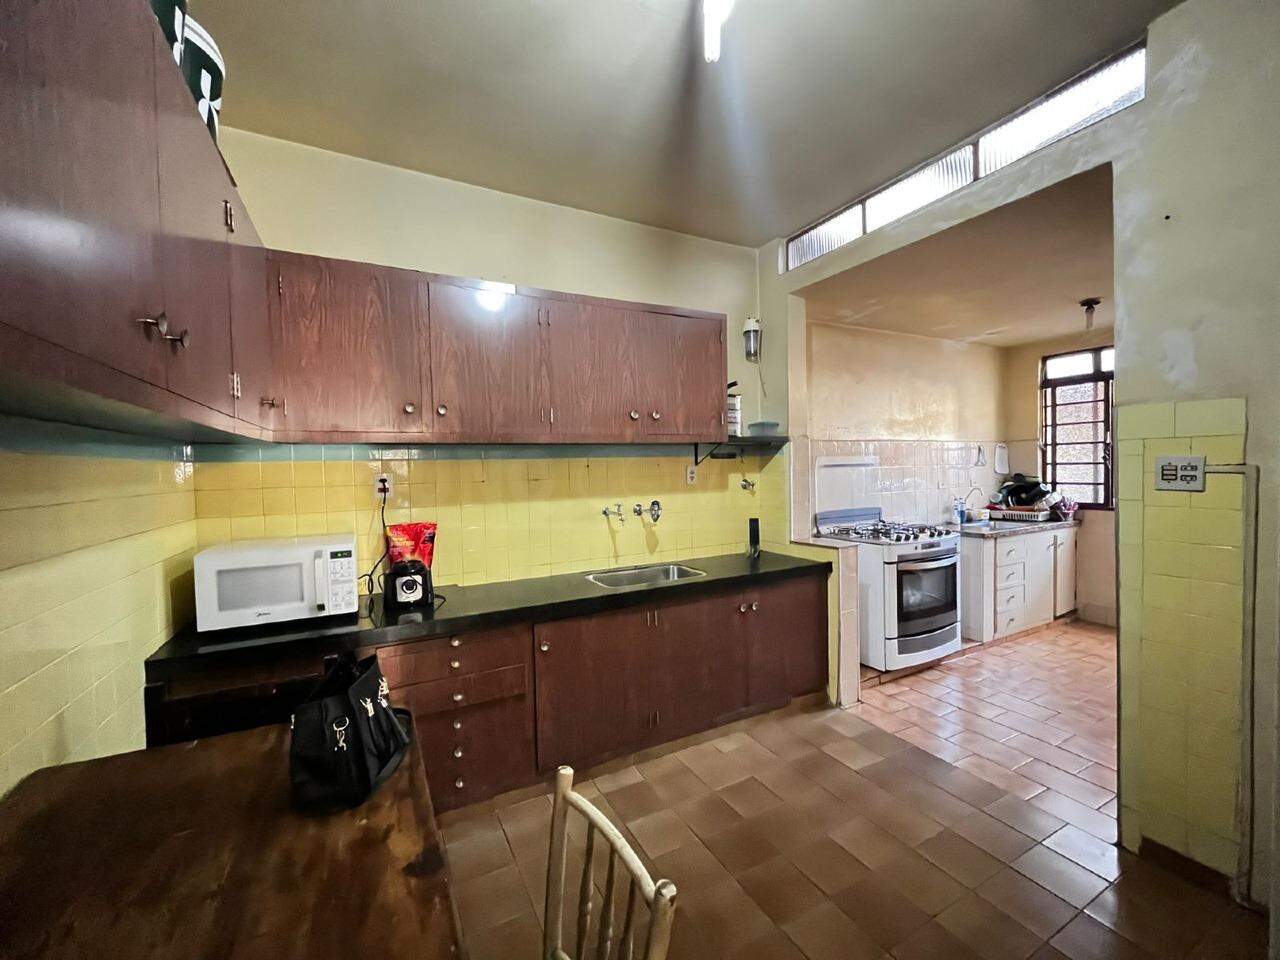 Casa à venda, 4 quartos, 1 vaga, no bairro Cidade Alta em Piracicaba - SP